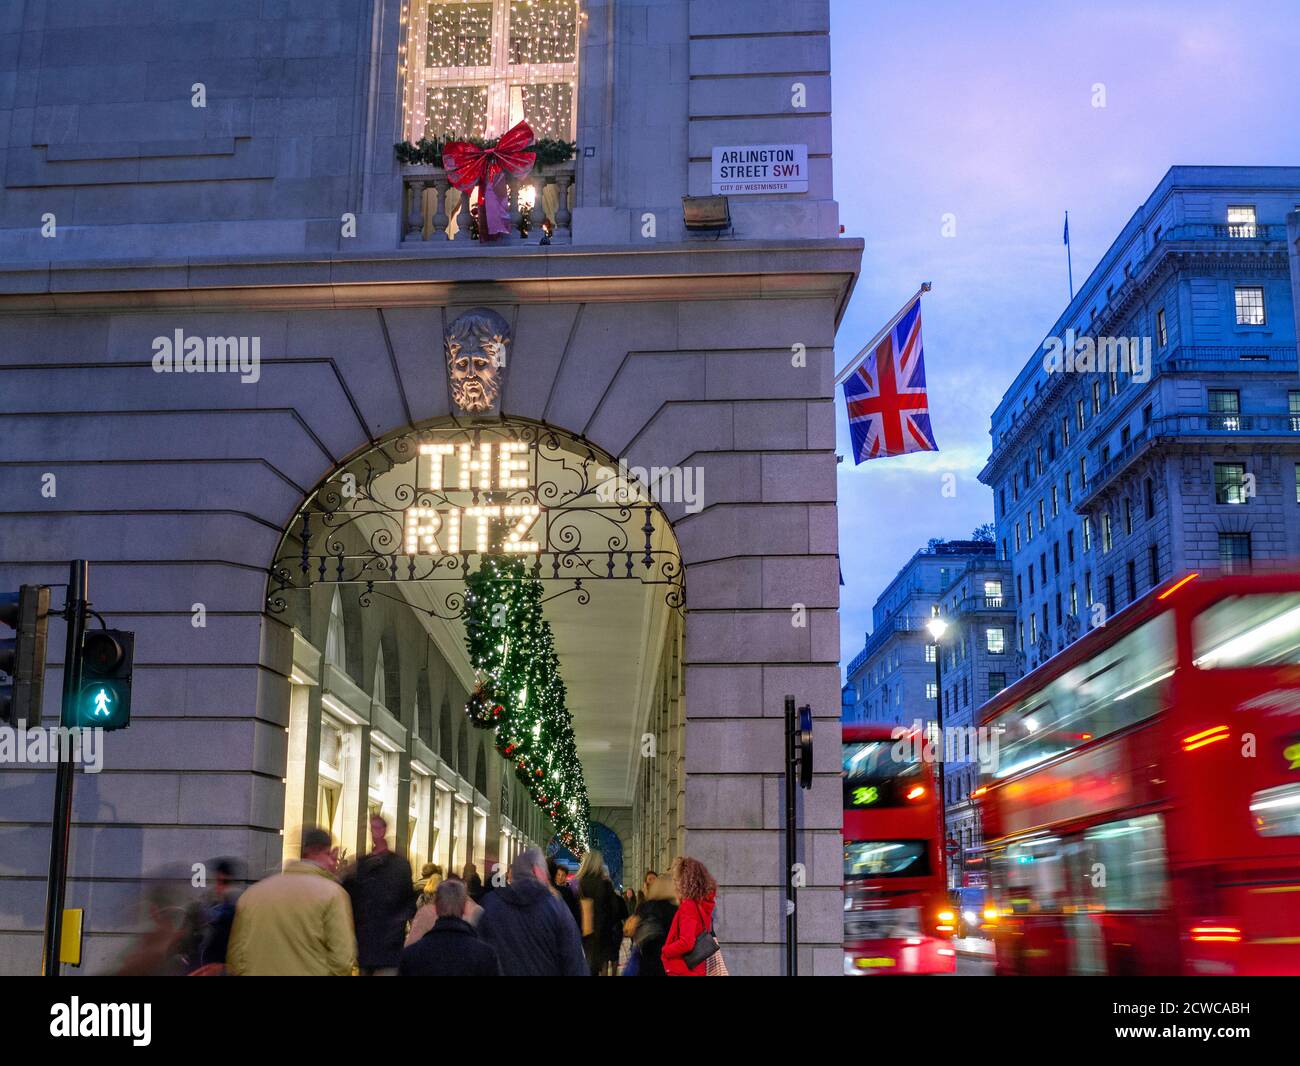 The Ritz Hotel zu Weihnachten festliche Jahreszeit, abends Lichter ‘The Ritz’ Schild beleuchtet, mit einer Union Jack Flagge, Einkäufer und vorbei an London roten Bussen Arlington Street Piccadilly London UK Stockfoto